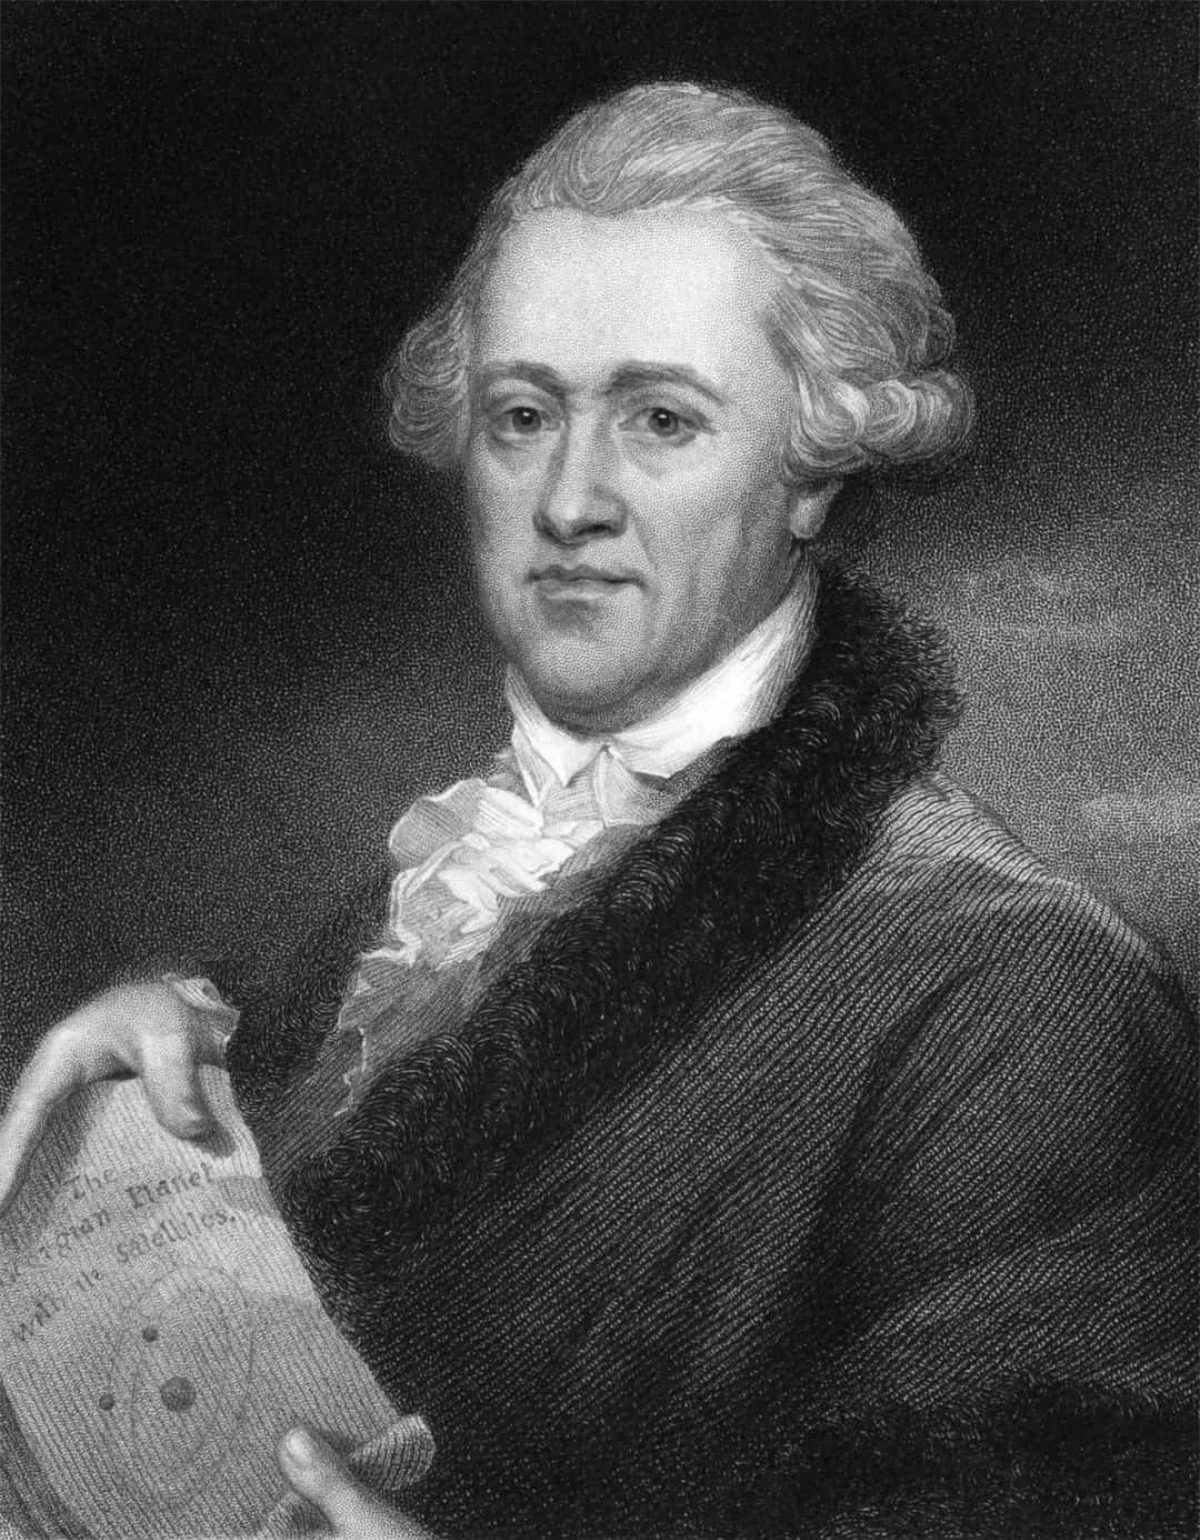 Nhà thiên văn học người Đức William Herschel là người đã phát hiện ra hành tinh này vào năm 1781.